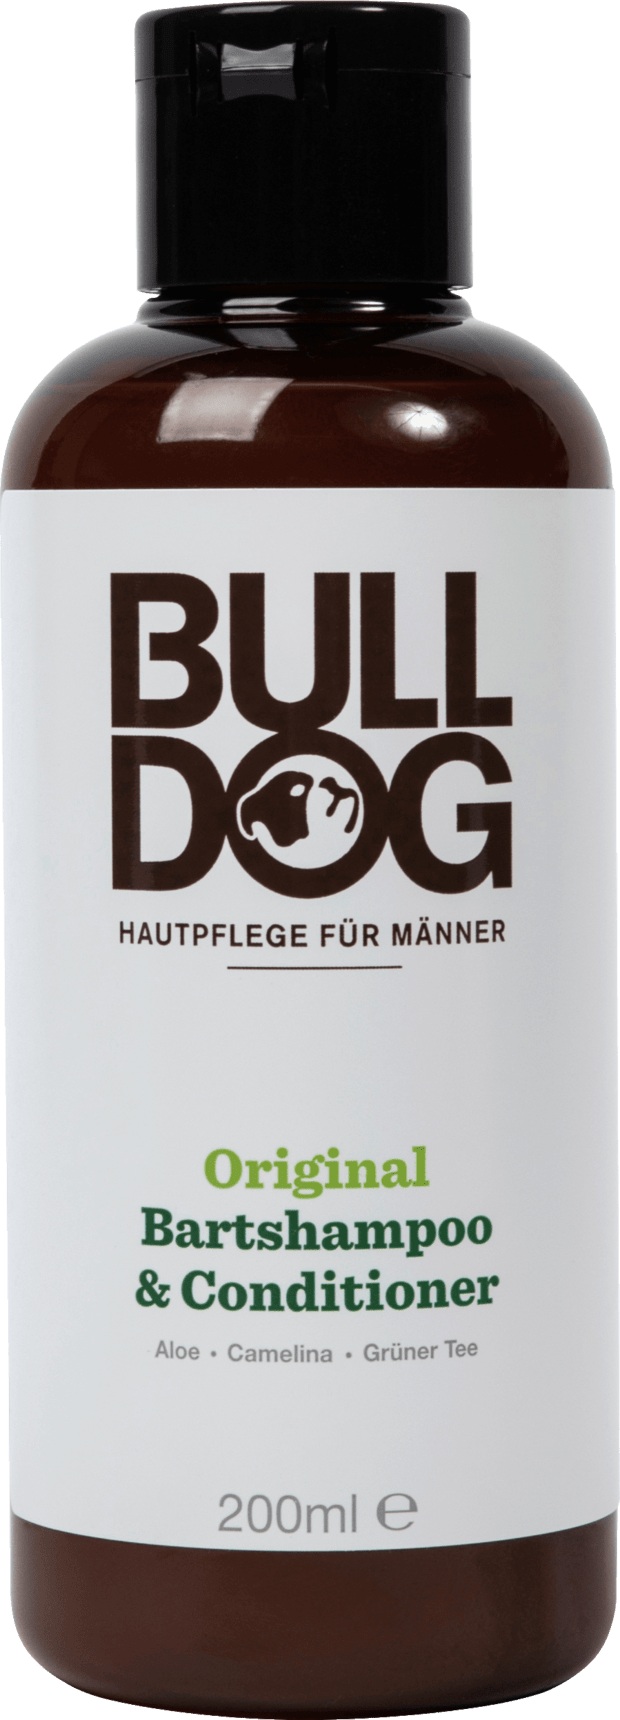 Bulldog Original Bartshampoo & Conditioner, 200 Ml